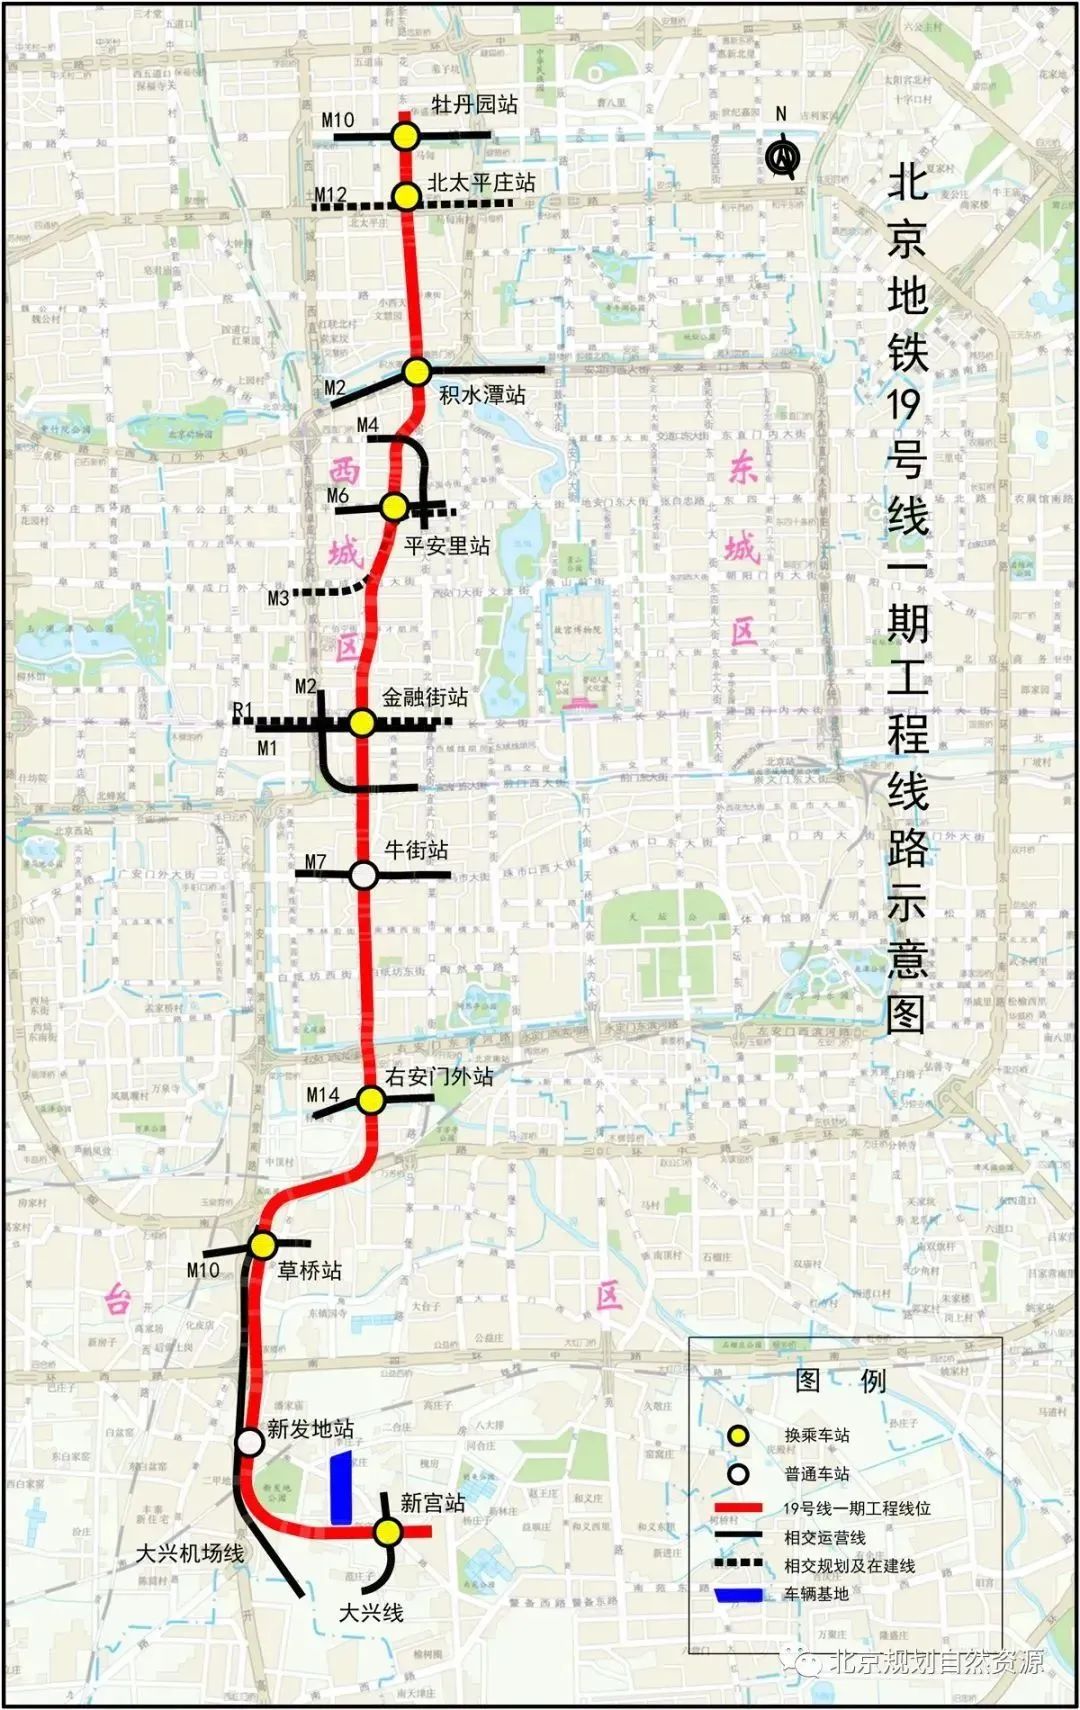 北京地铁19号线剩余4站今起试运营!多站点换乘多路线